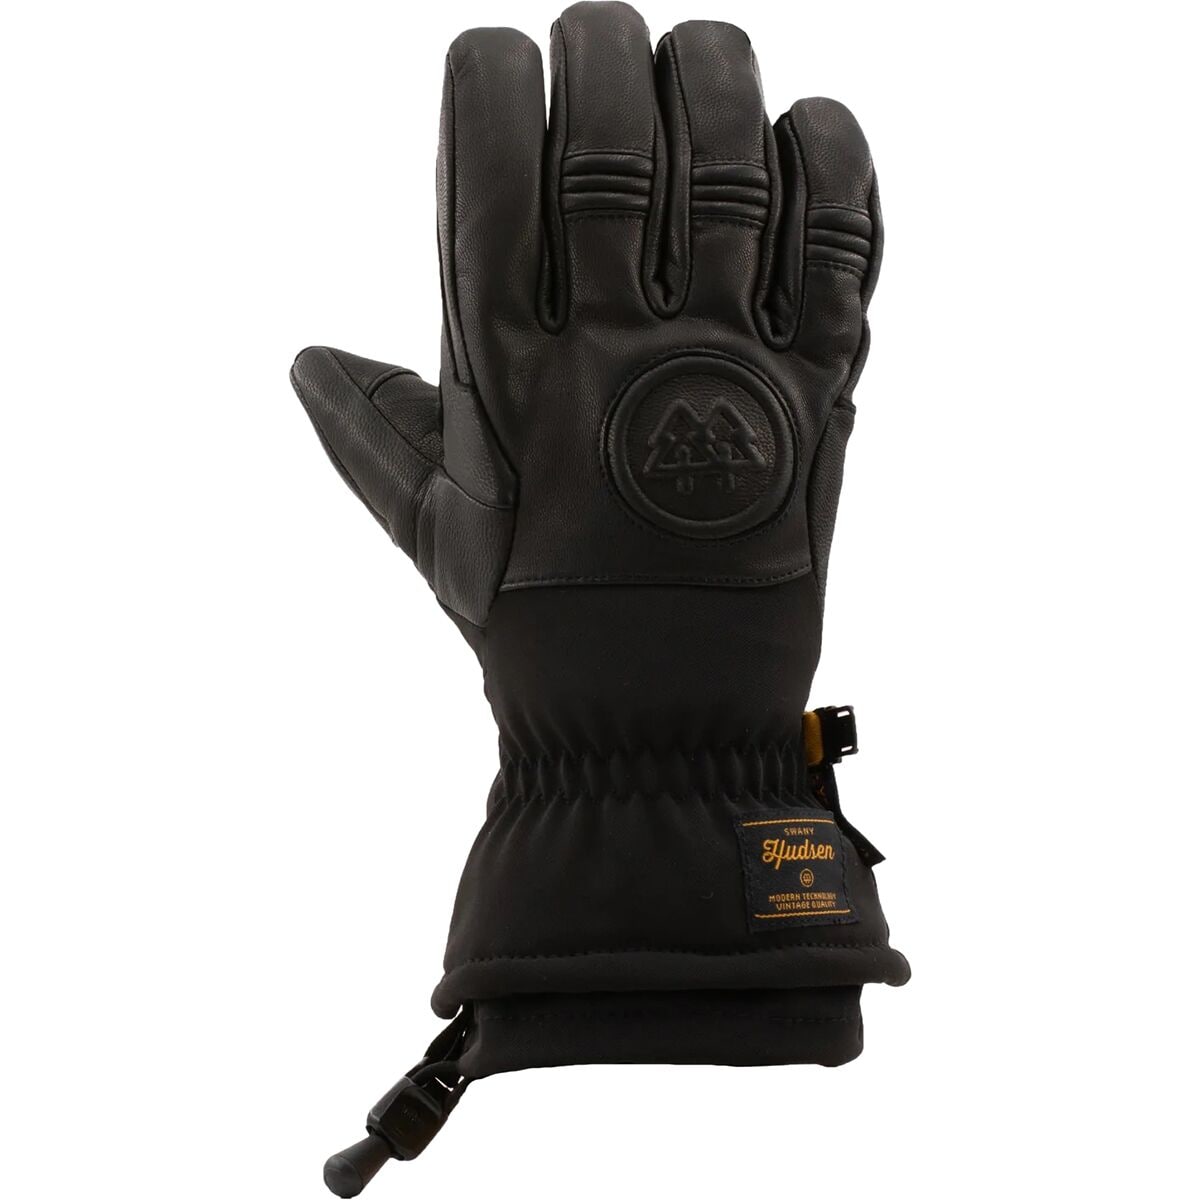 Swany Skylar 2.1 Glove - Men's Black